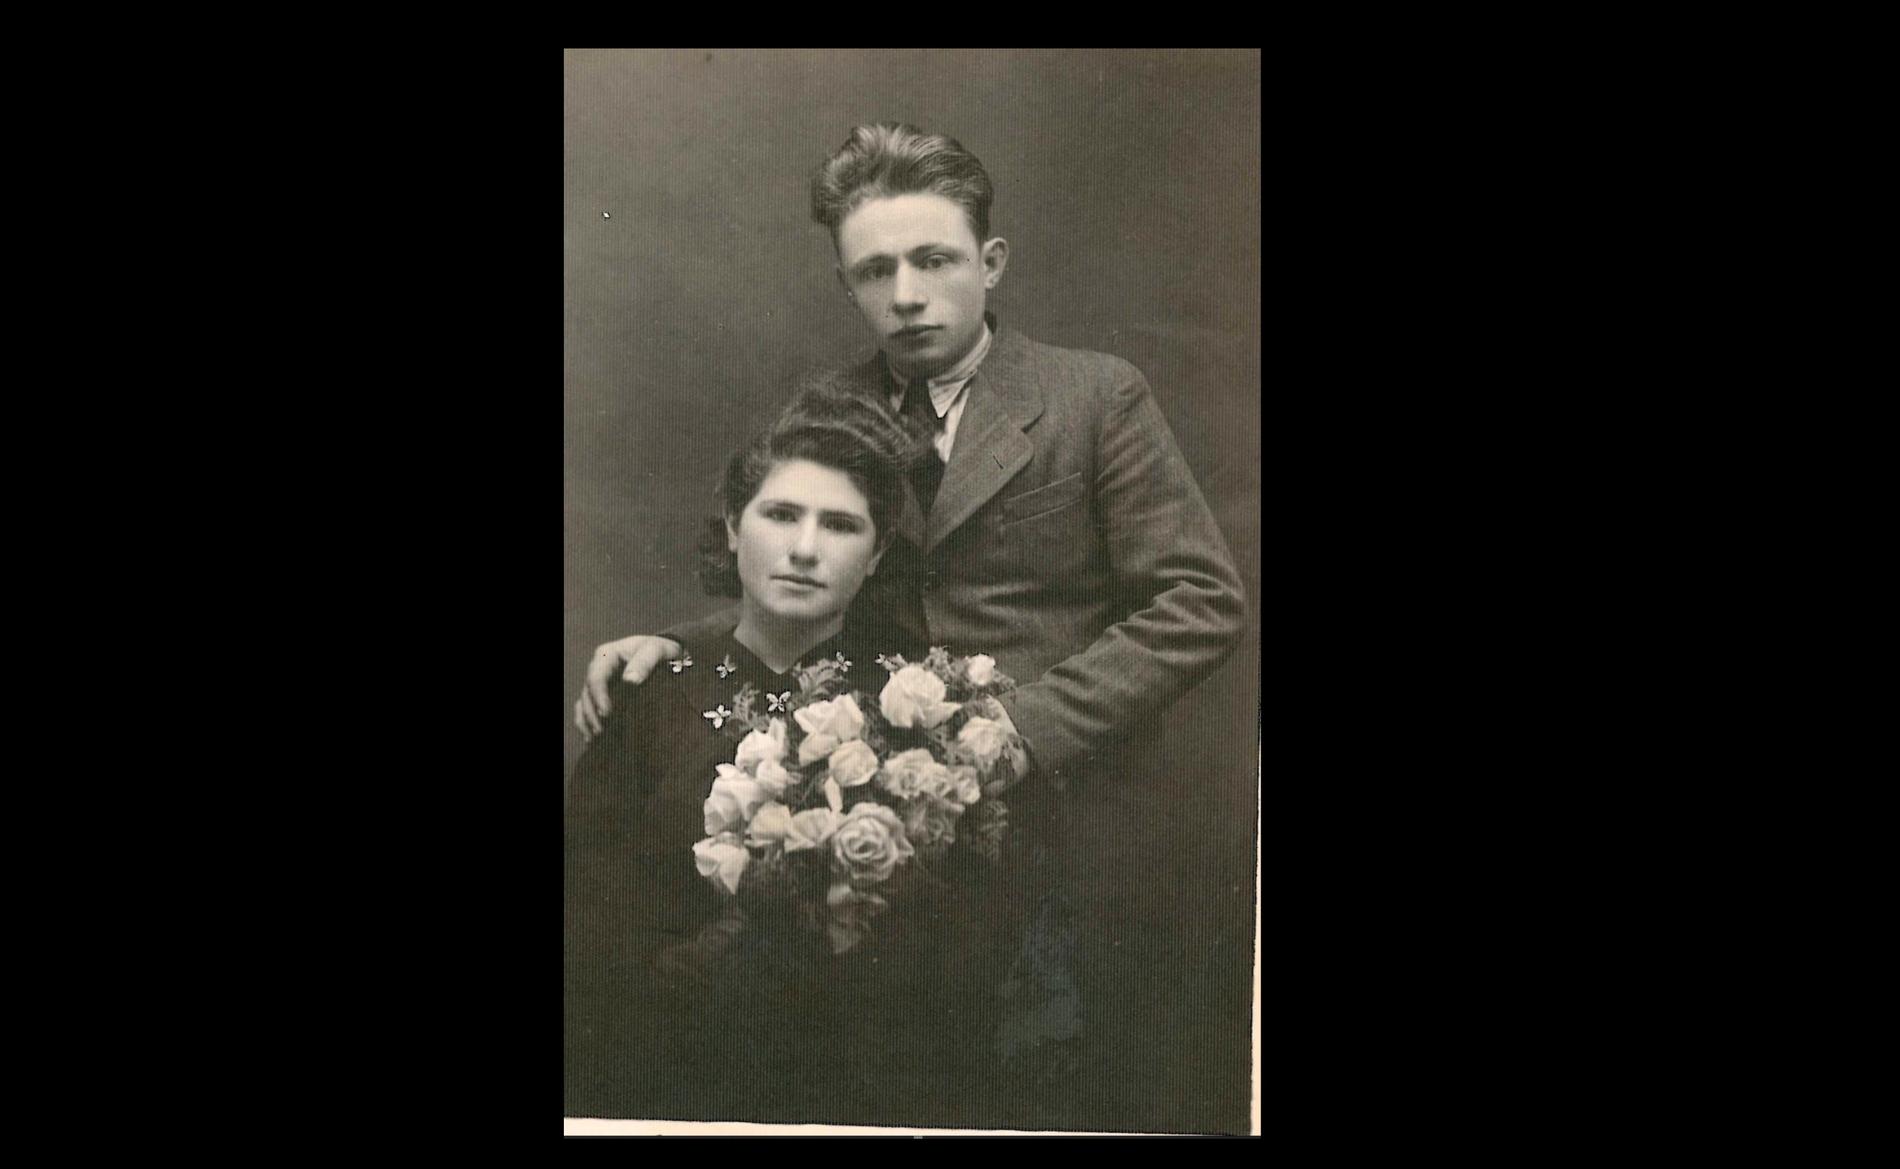 Cyla, född Bierman, och Lejb Trus gifte sig den 2 december 1946 i Bialystok. Kort efter lämnade de Polen för Sverige. Delar av Lejbs familj dödades i koncentrationslägret Treblinka, delar av Cylas familj mördades och begravdes tillsammans med tusentals andra judar i en massgrav utanför staden Yavoriv i västra Ukraina. 